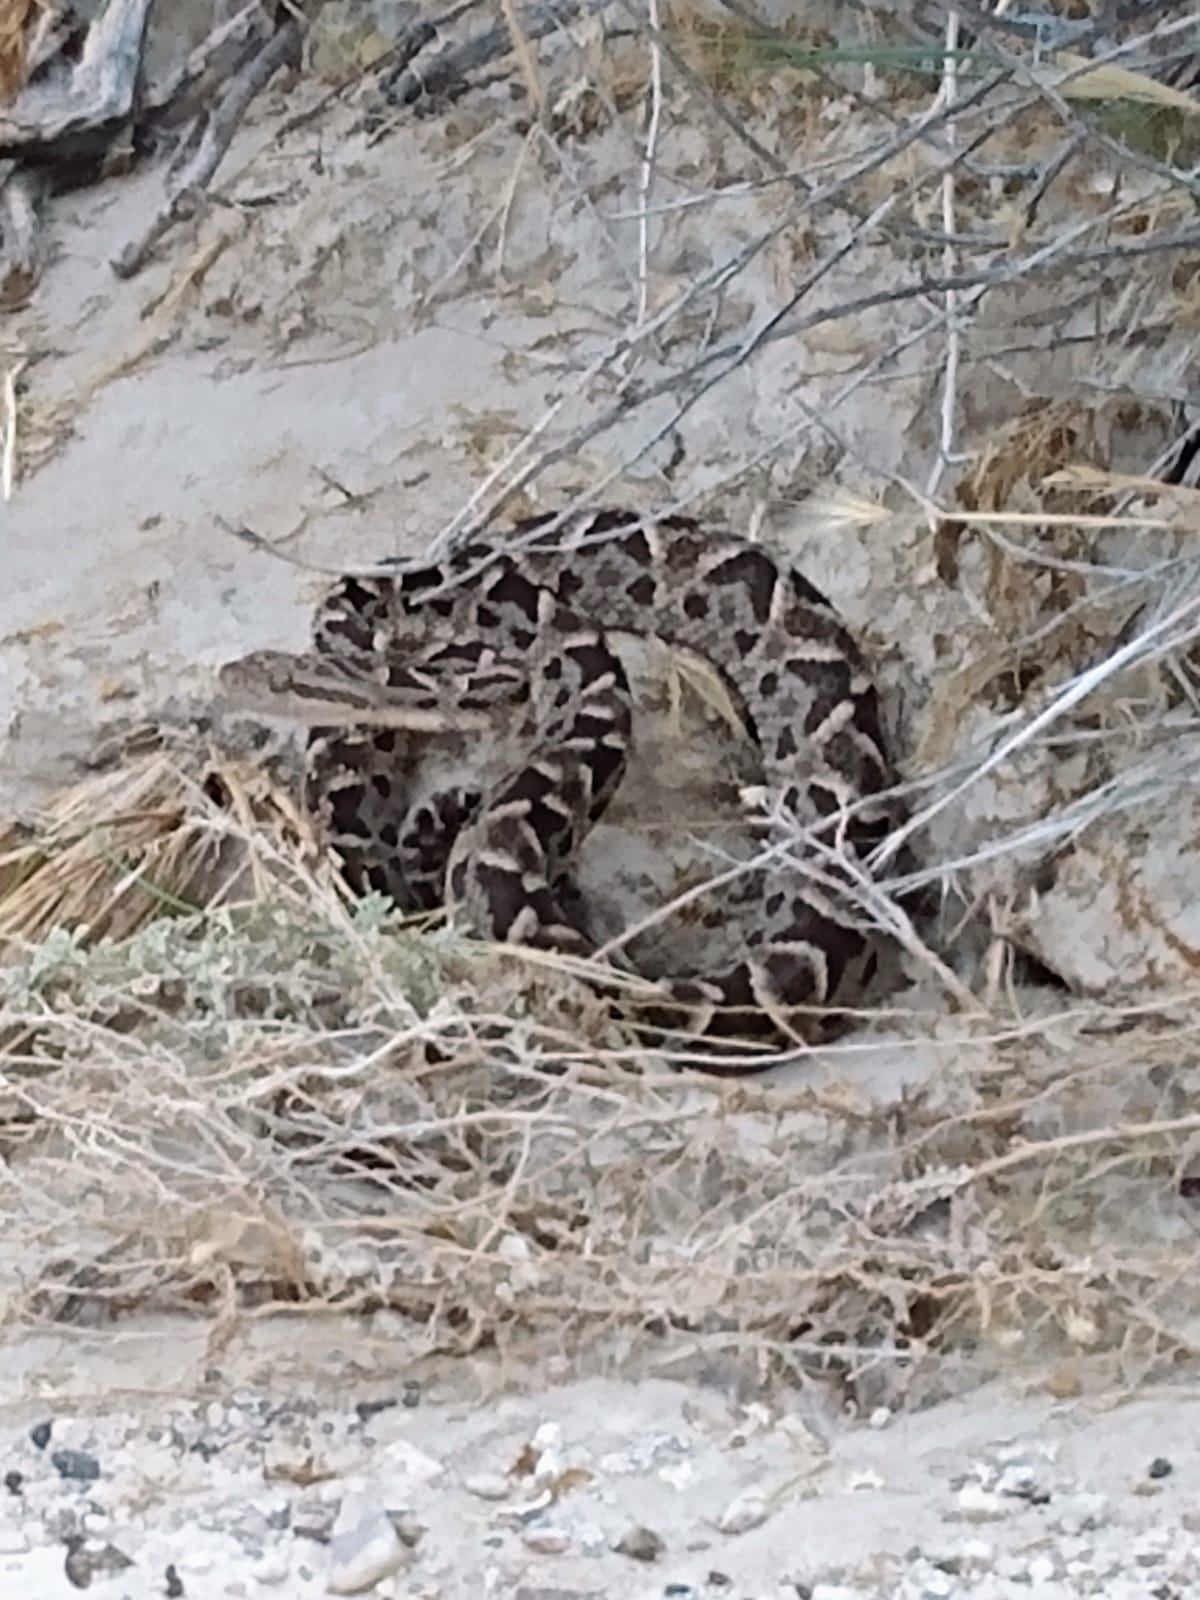 La serpiente fue divisada en un sendero en Paso Córdoba. (Foto gentileza)